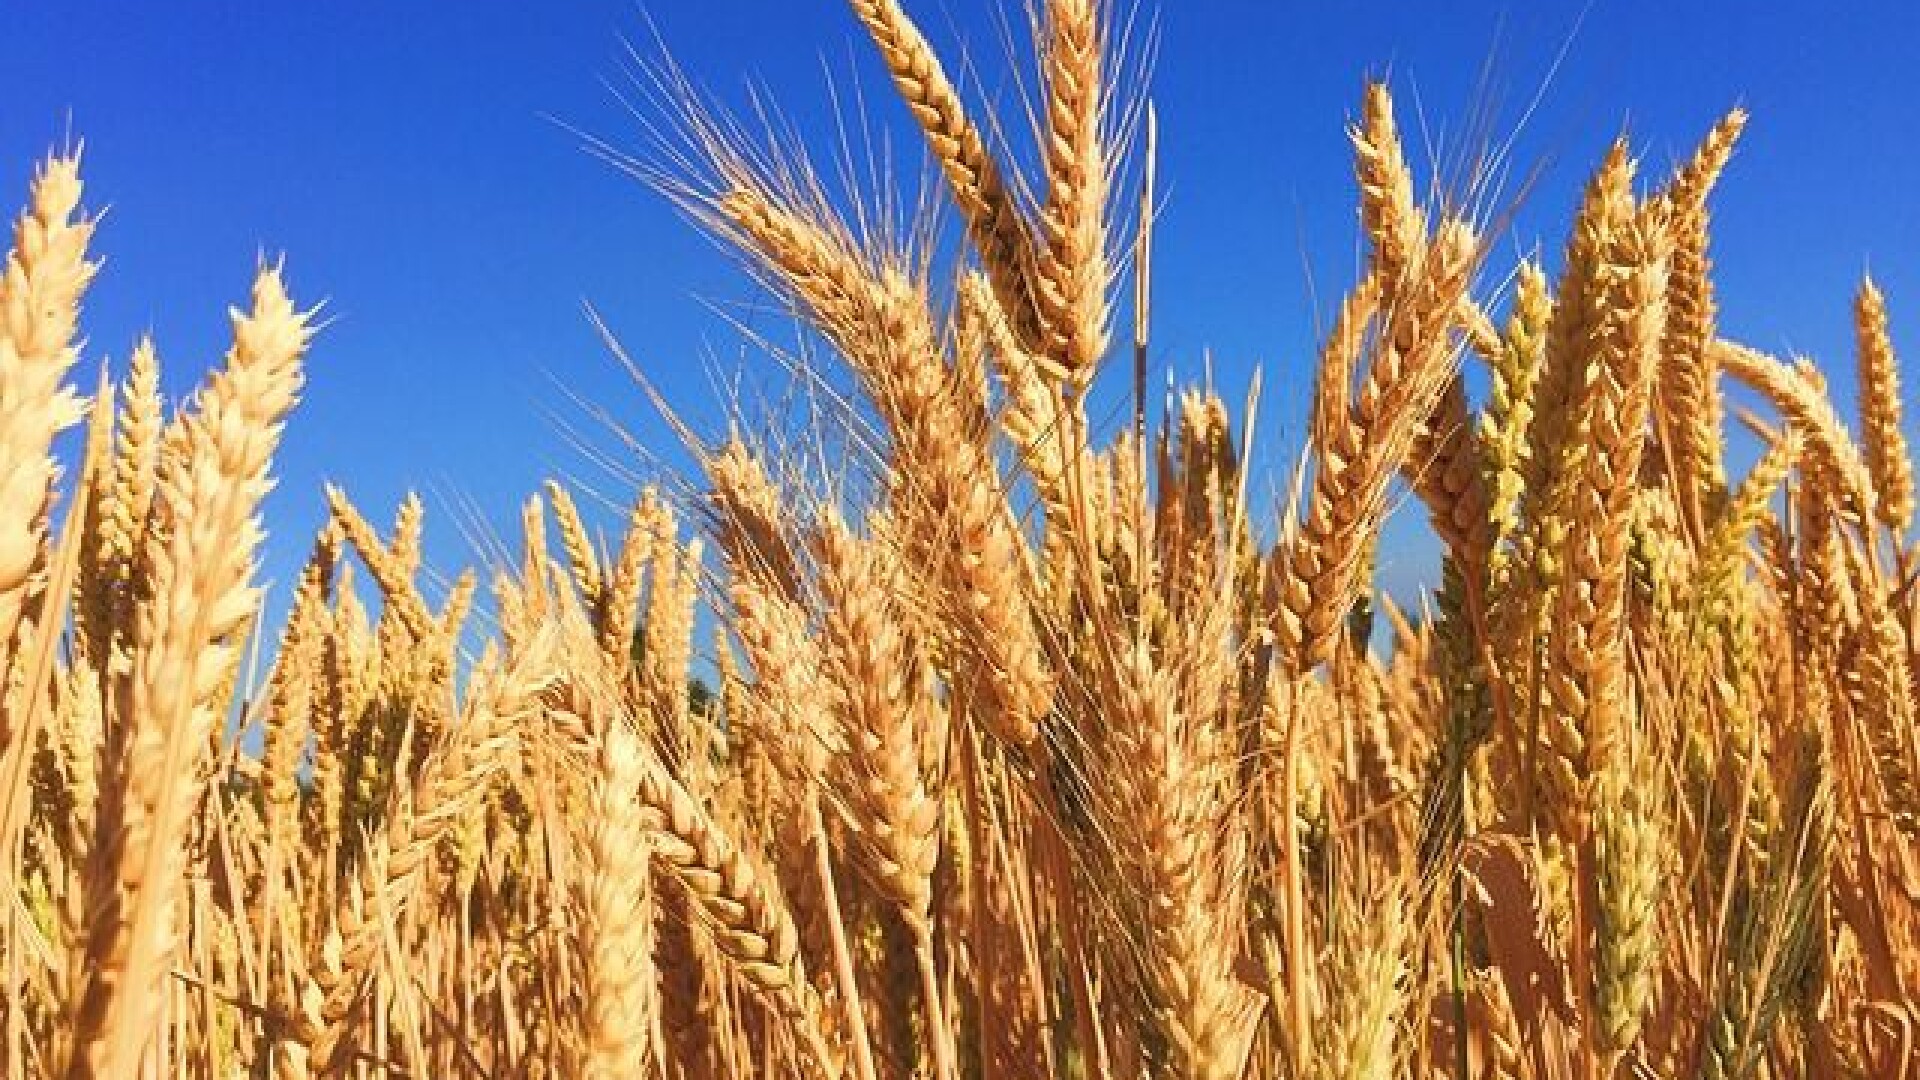 UE critică România pentru interzicerea exporturilor de cereale: ”Măsuri disproporționate”